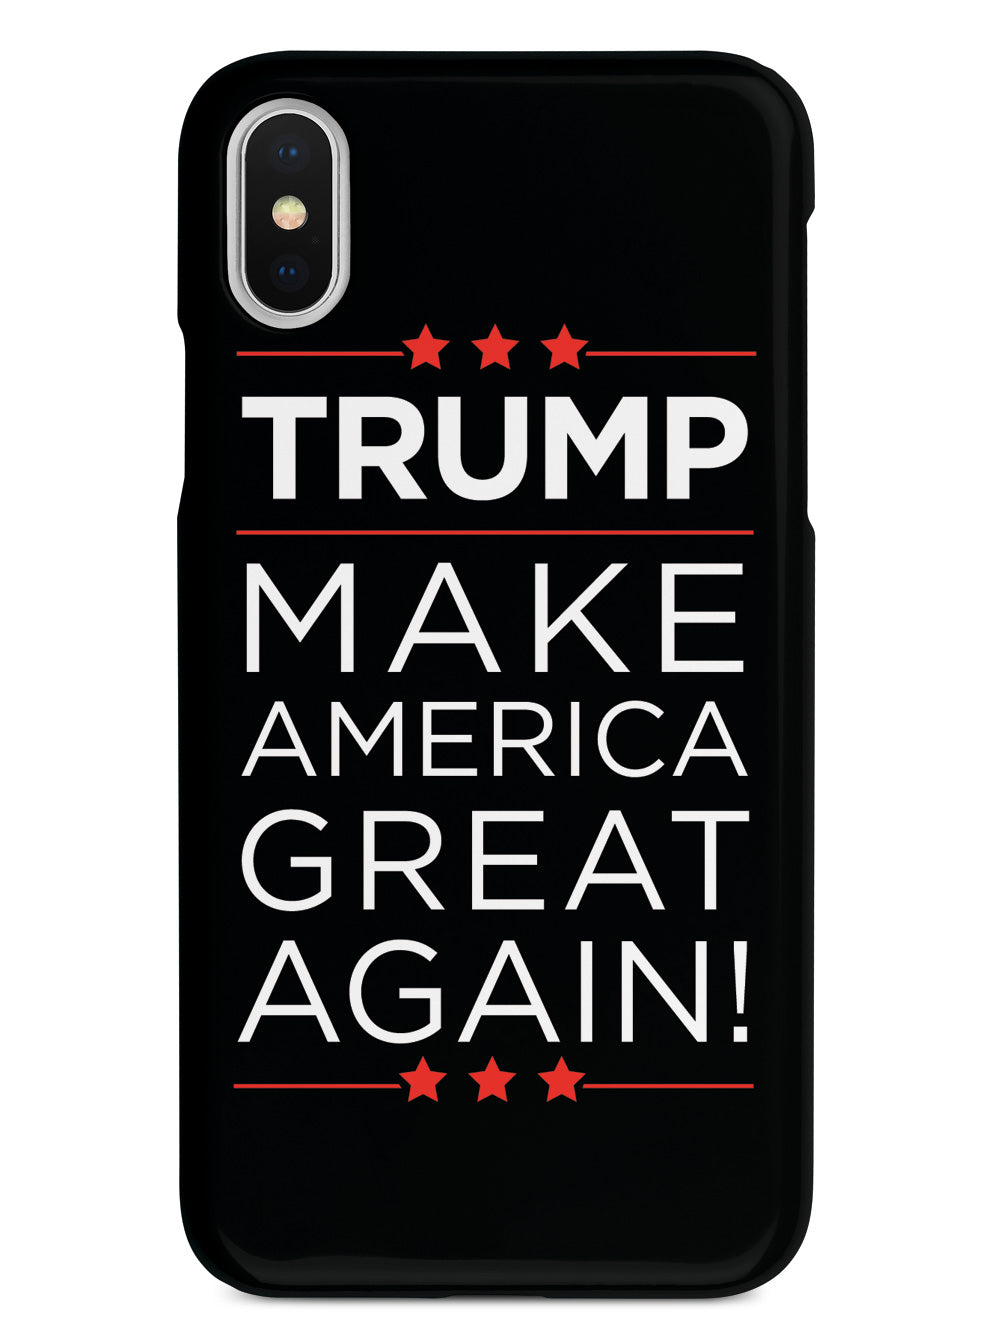 Trump - Make America Great Again - Black Case